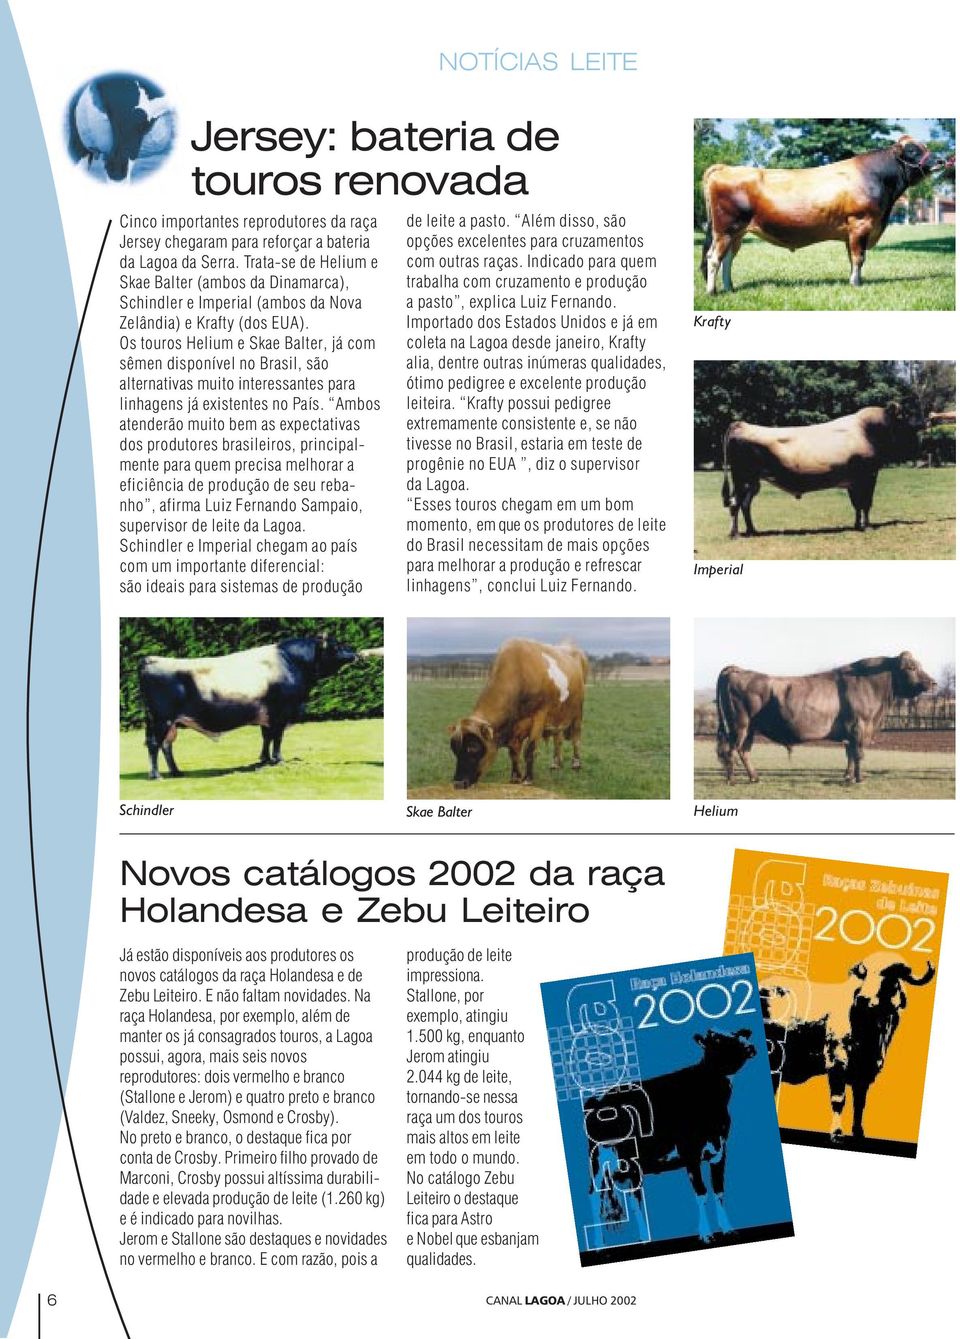 Os touros Helium e Skae Balter, já com sêmen disponível no Brasil, são alternativas muito interessantes para linhagens já existentes no País.